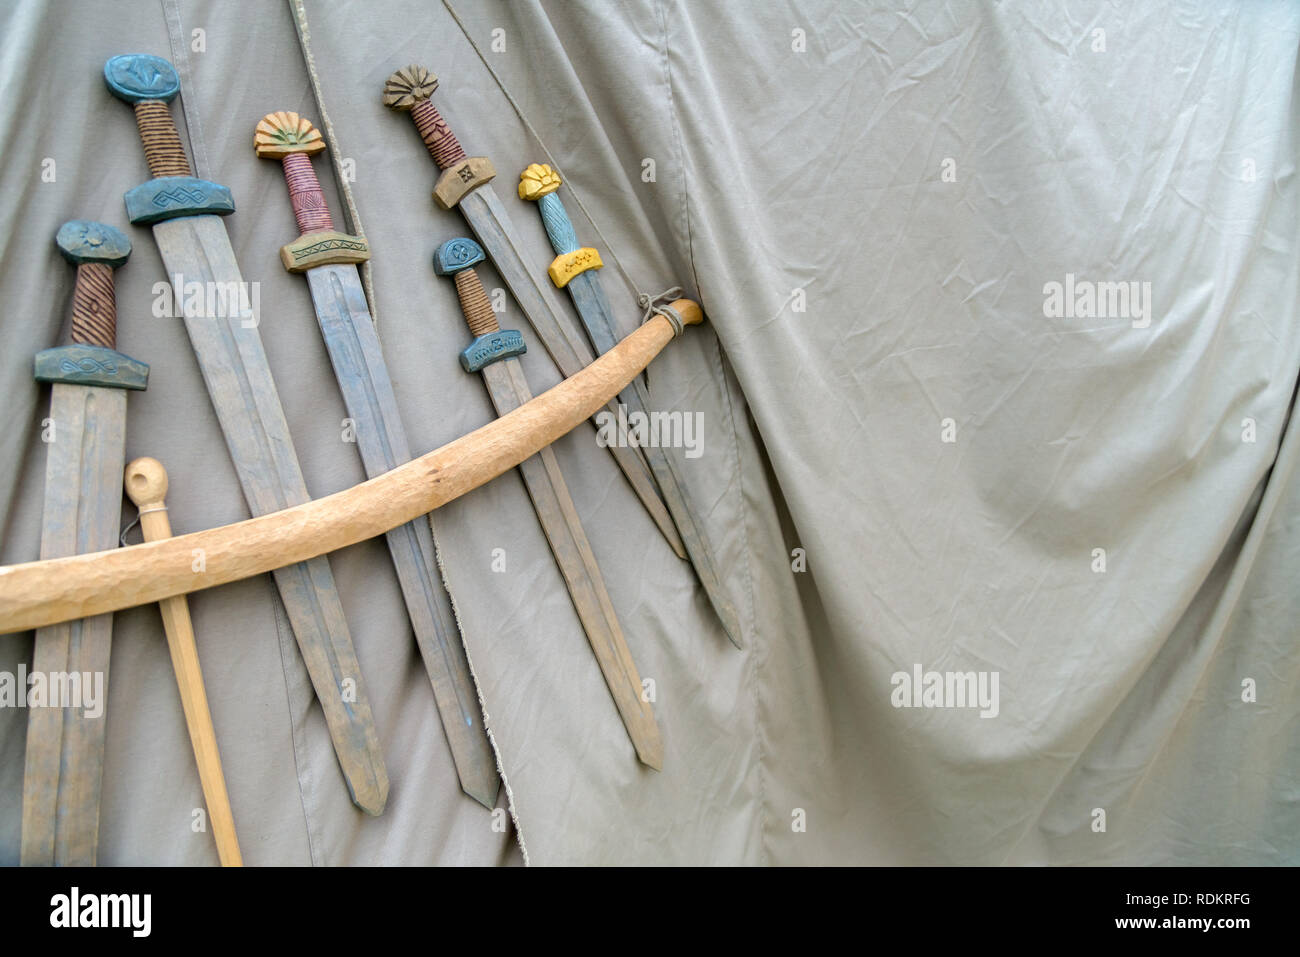 Holz- handgemachte Schwerter hängt am Seil auf grauer Stoff Hintergrund. Mittelalterliche Waffen für Nahkampf auf grauem Stoff Textur angezeigt Stockfoto